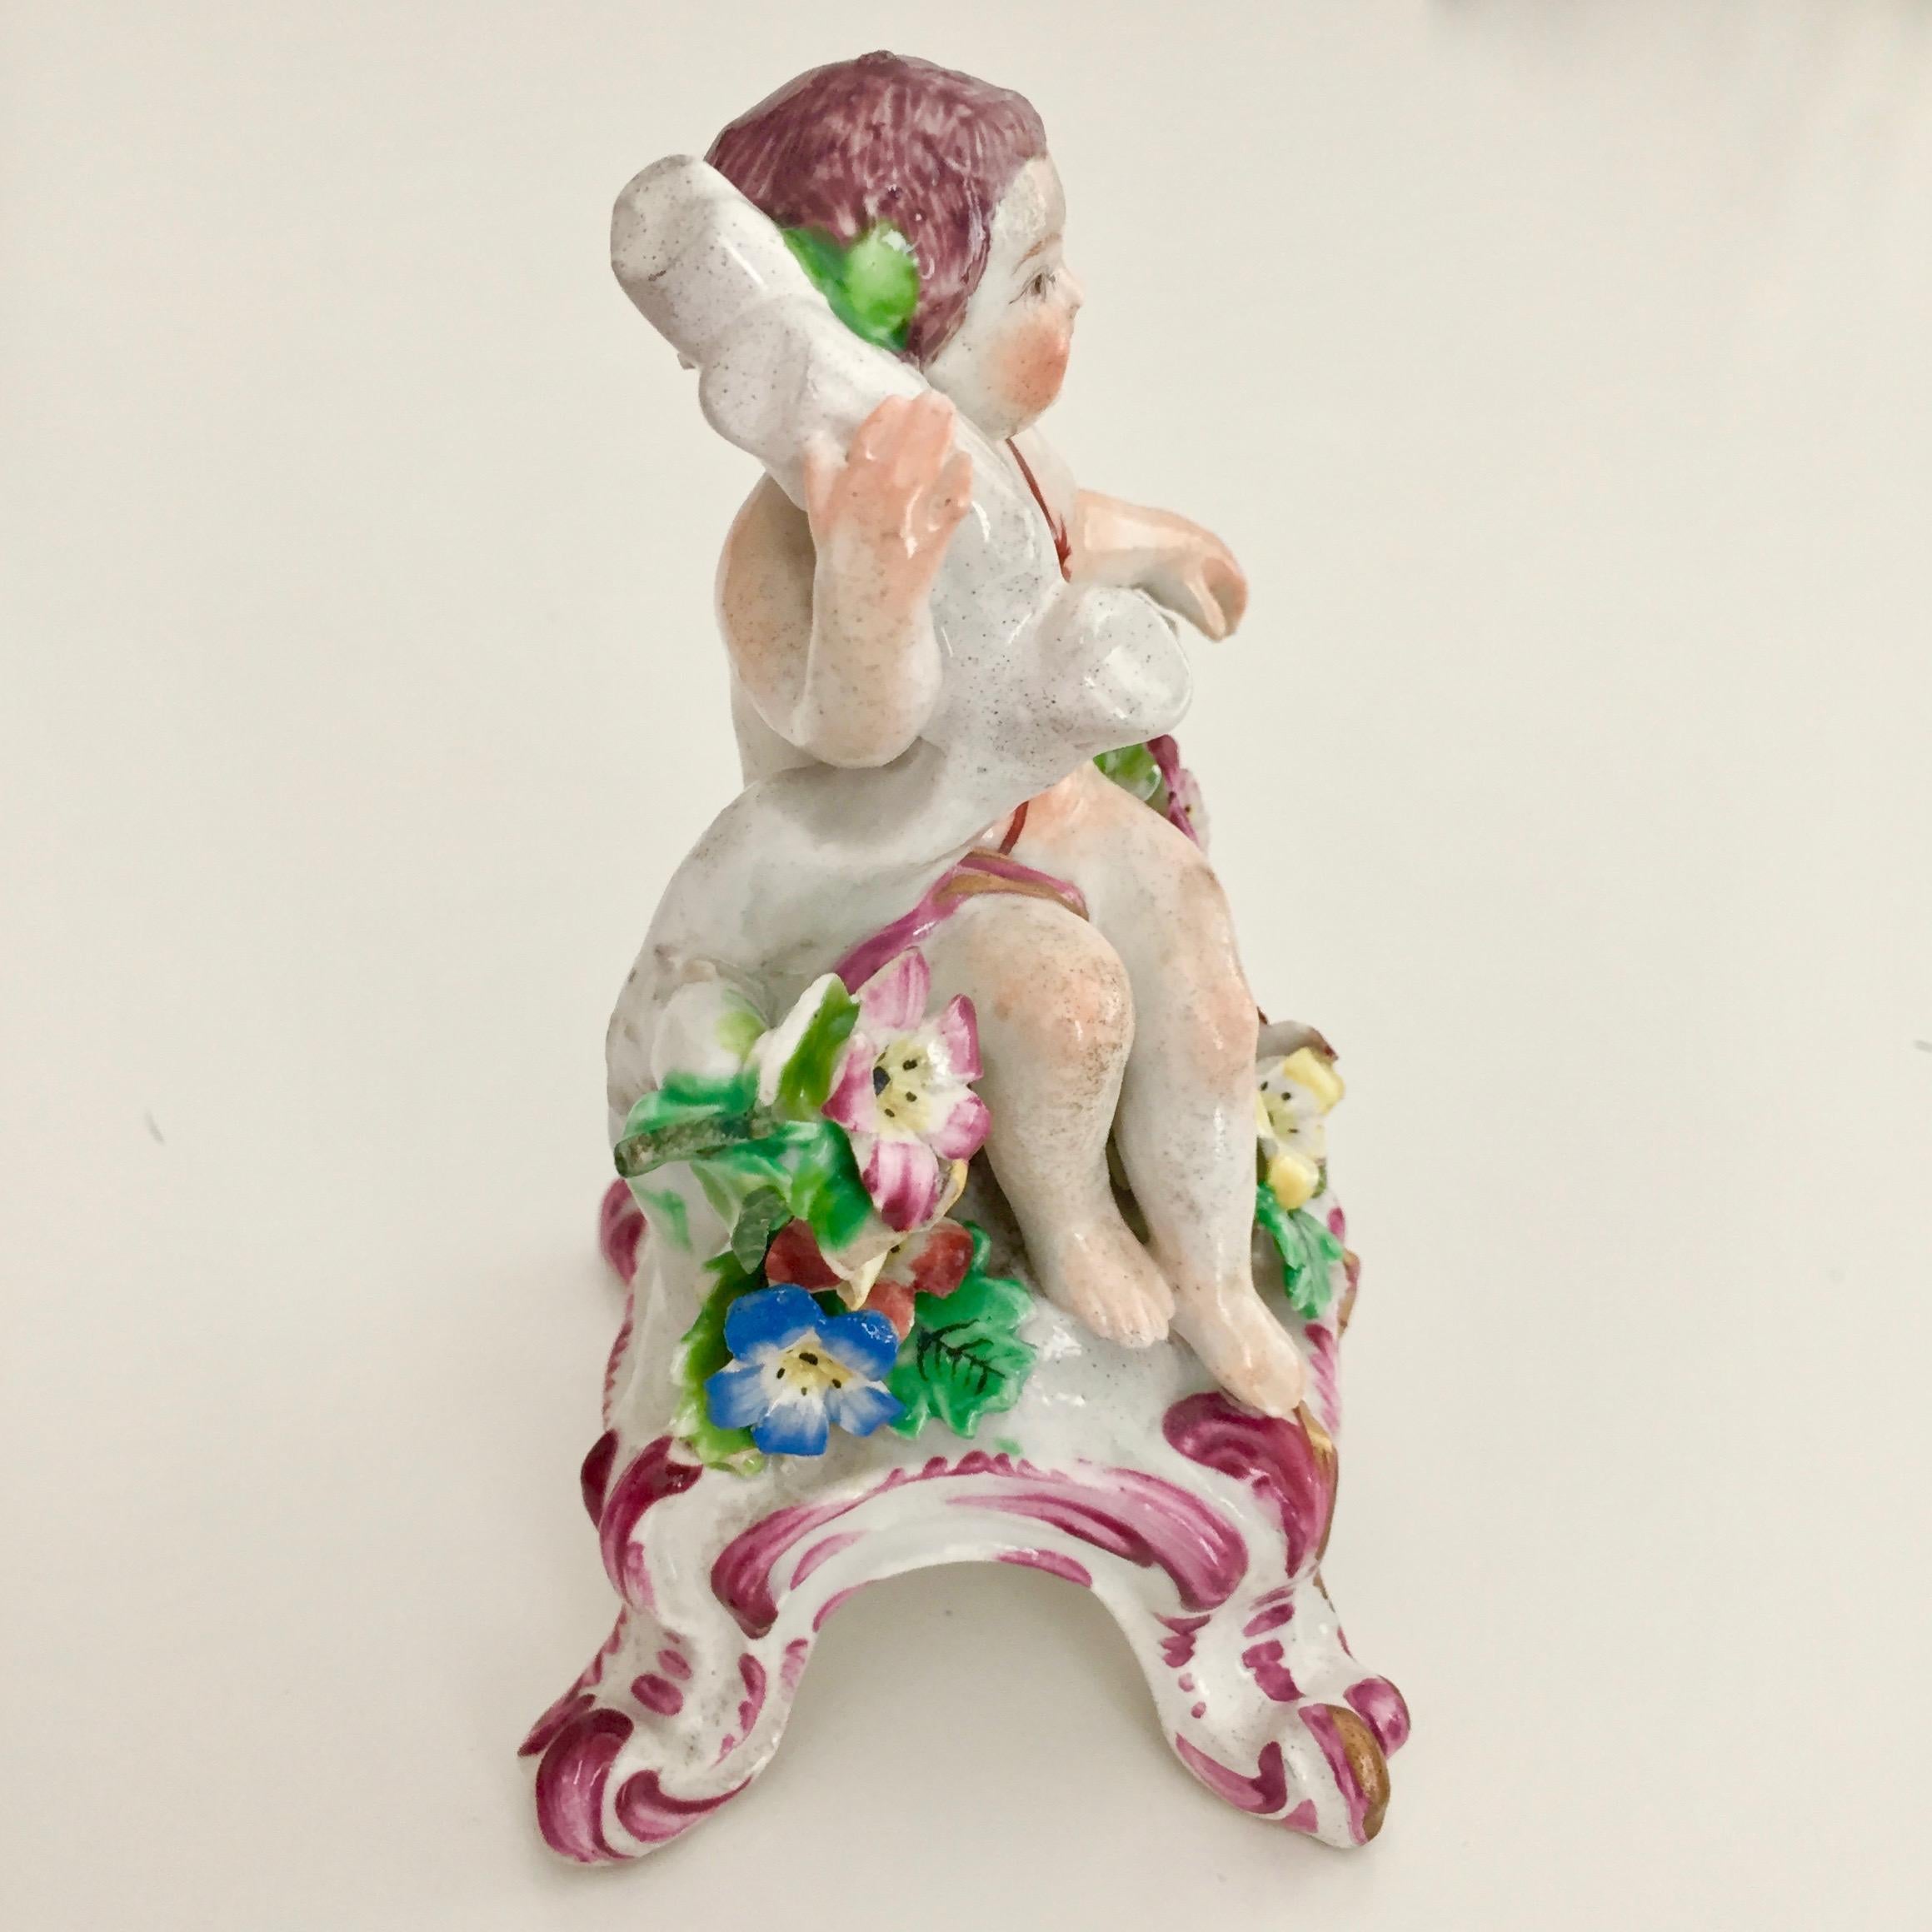 Il s'agit d'une merveilleuse petite figurine d'un garçon ou d'un putto fabriquée par la manufacture de porcelaine Bow vers 1760.

La Bow Porcelain Factory a été l'une des premières poteries de Grande-Bretagne à fabriquer de la porcelaine à pâte